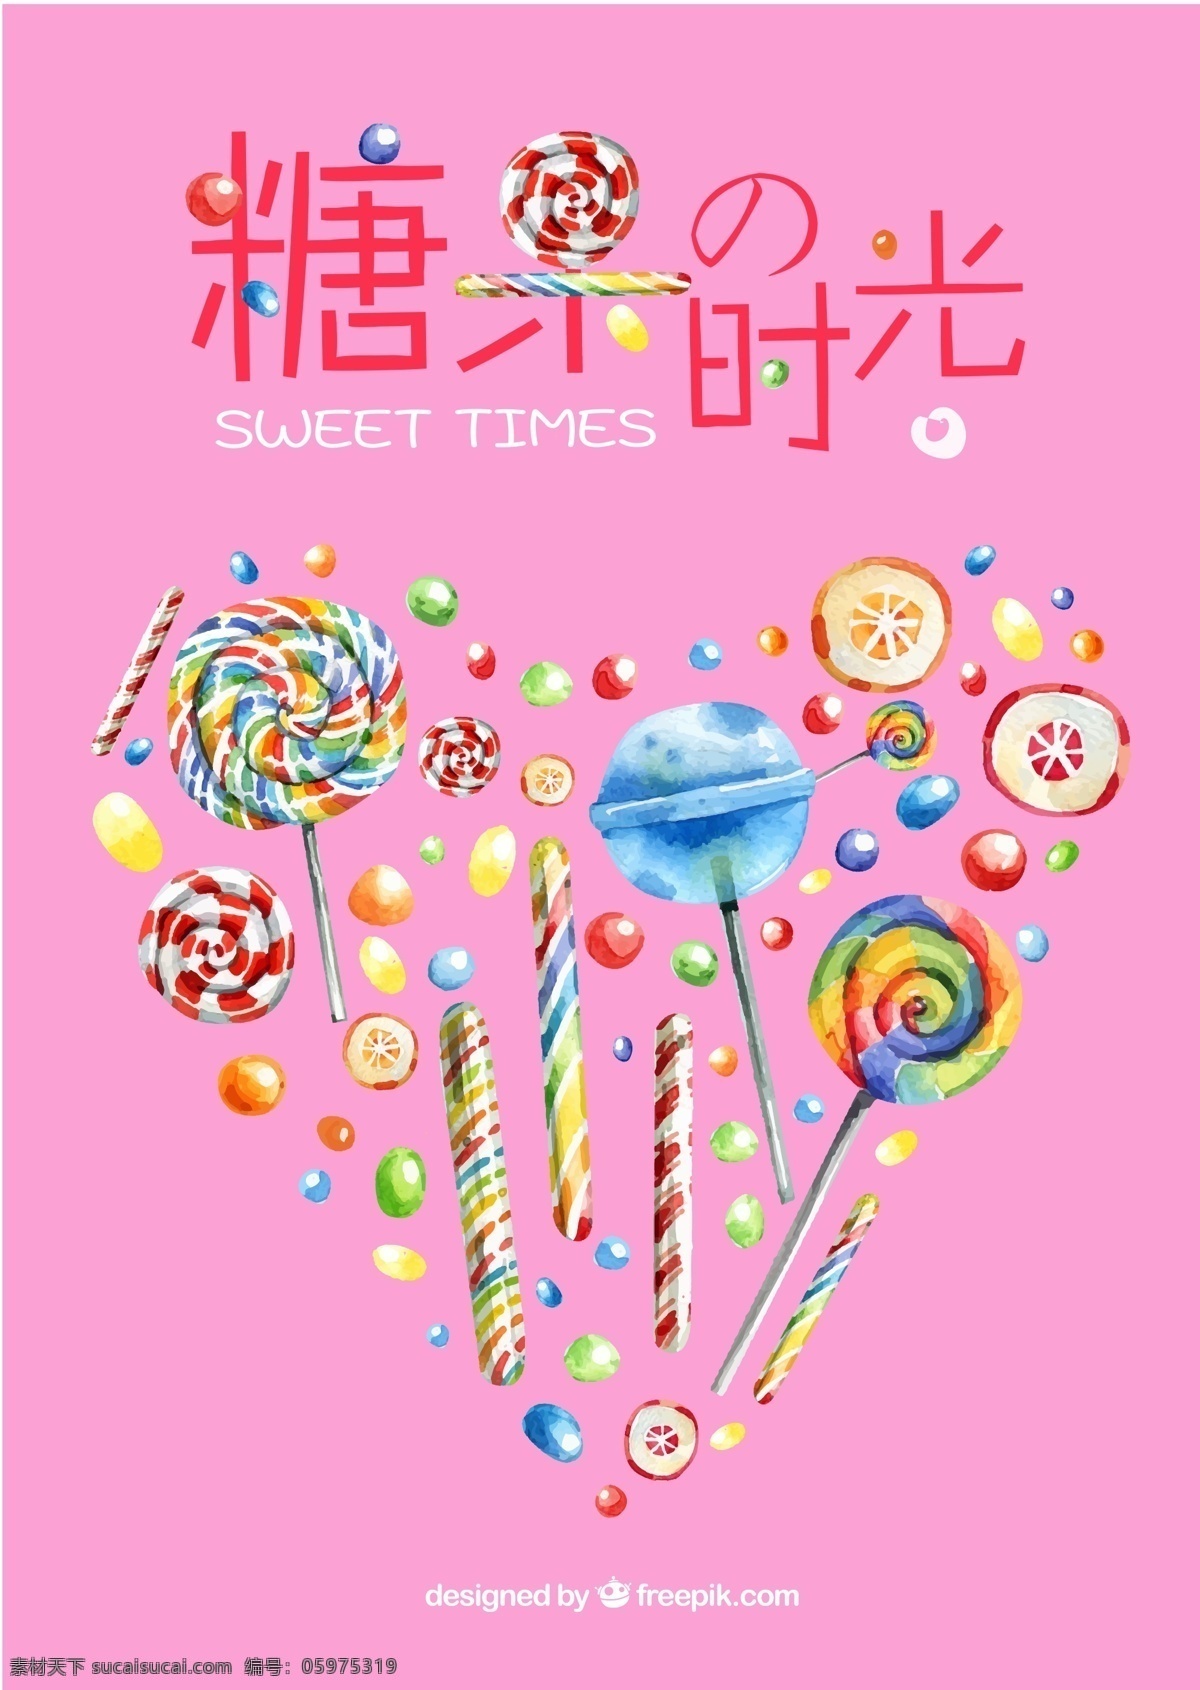 糖果时光 甜蜜 情人节 棒棒糖 粉色 糖果 爱心